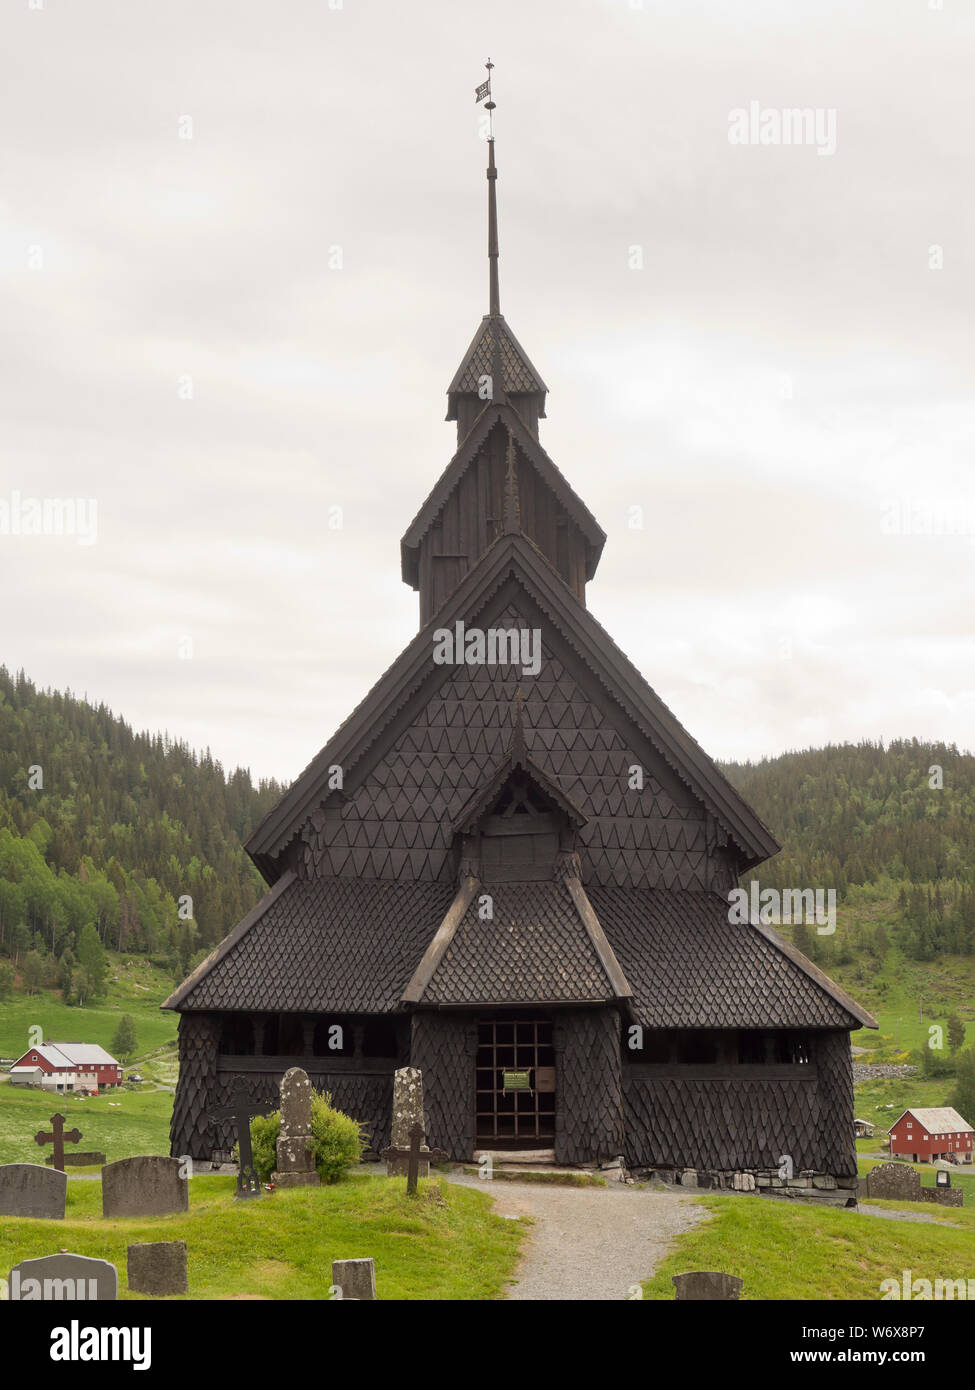 Eidsborg Stave church à partir de la période médiévale, un premier exemple de l'architecture en bois norvégien et une attraction touristique entouré de son cimetière Banque D'Images